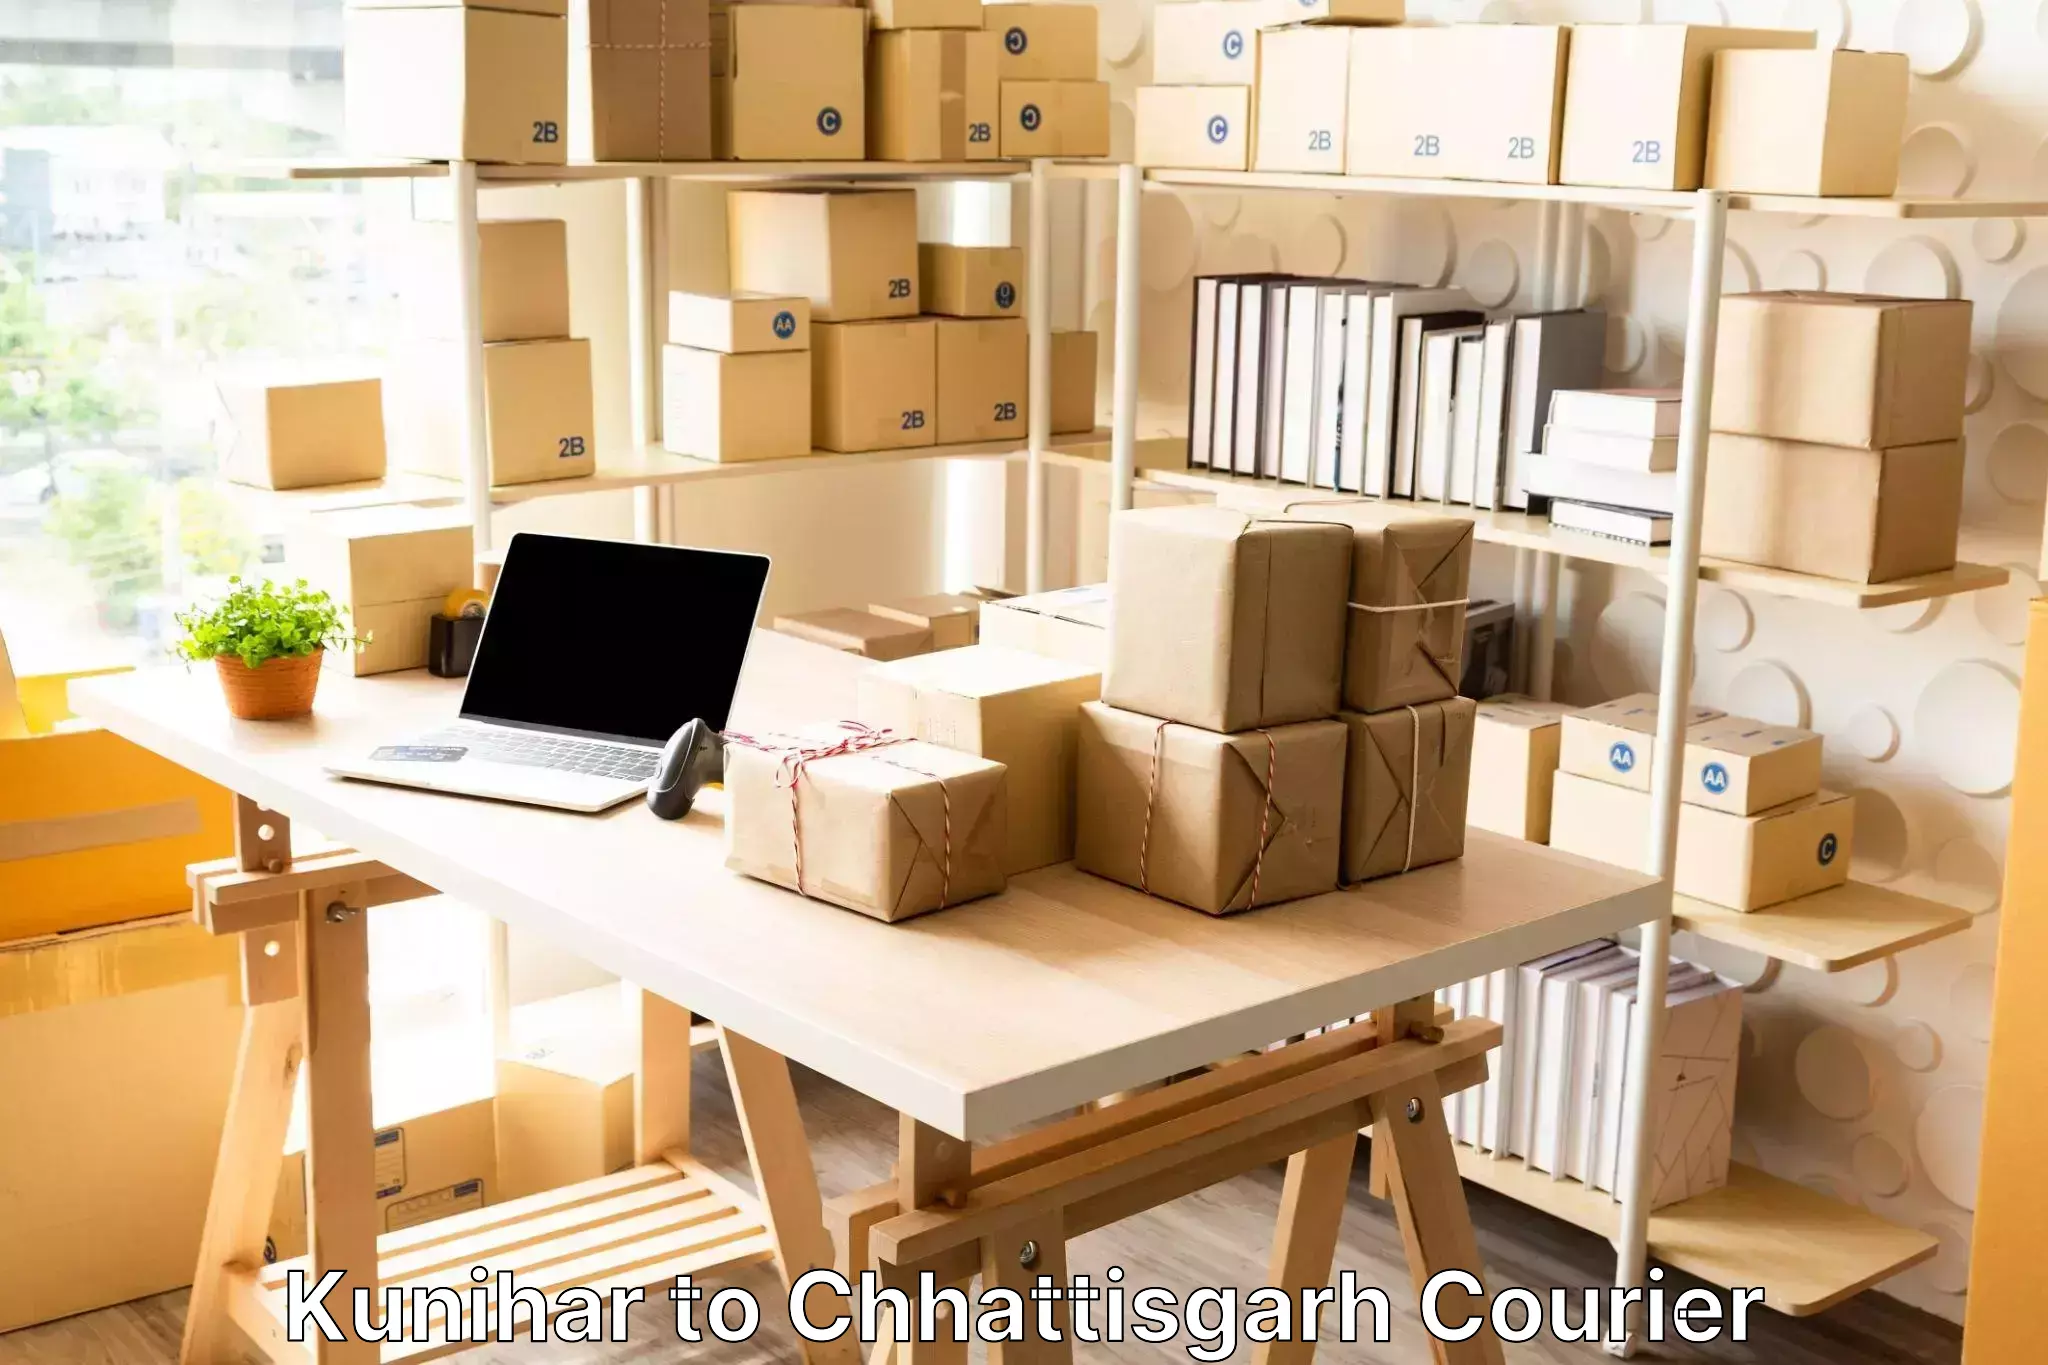 Luggage courier logistics in Kunihar to Patna Chhattisgarh